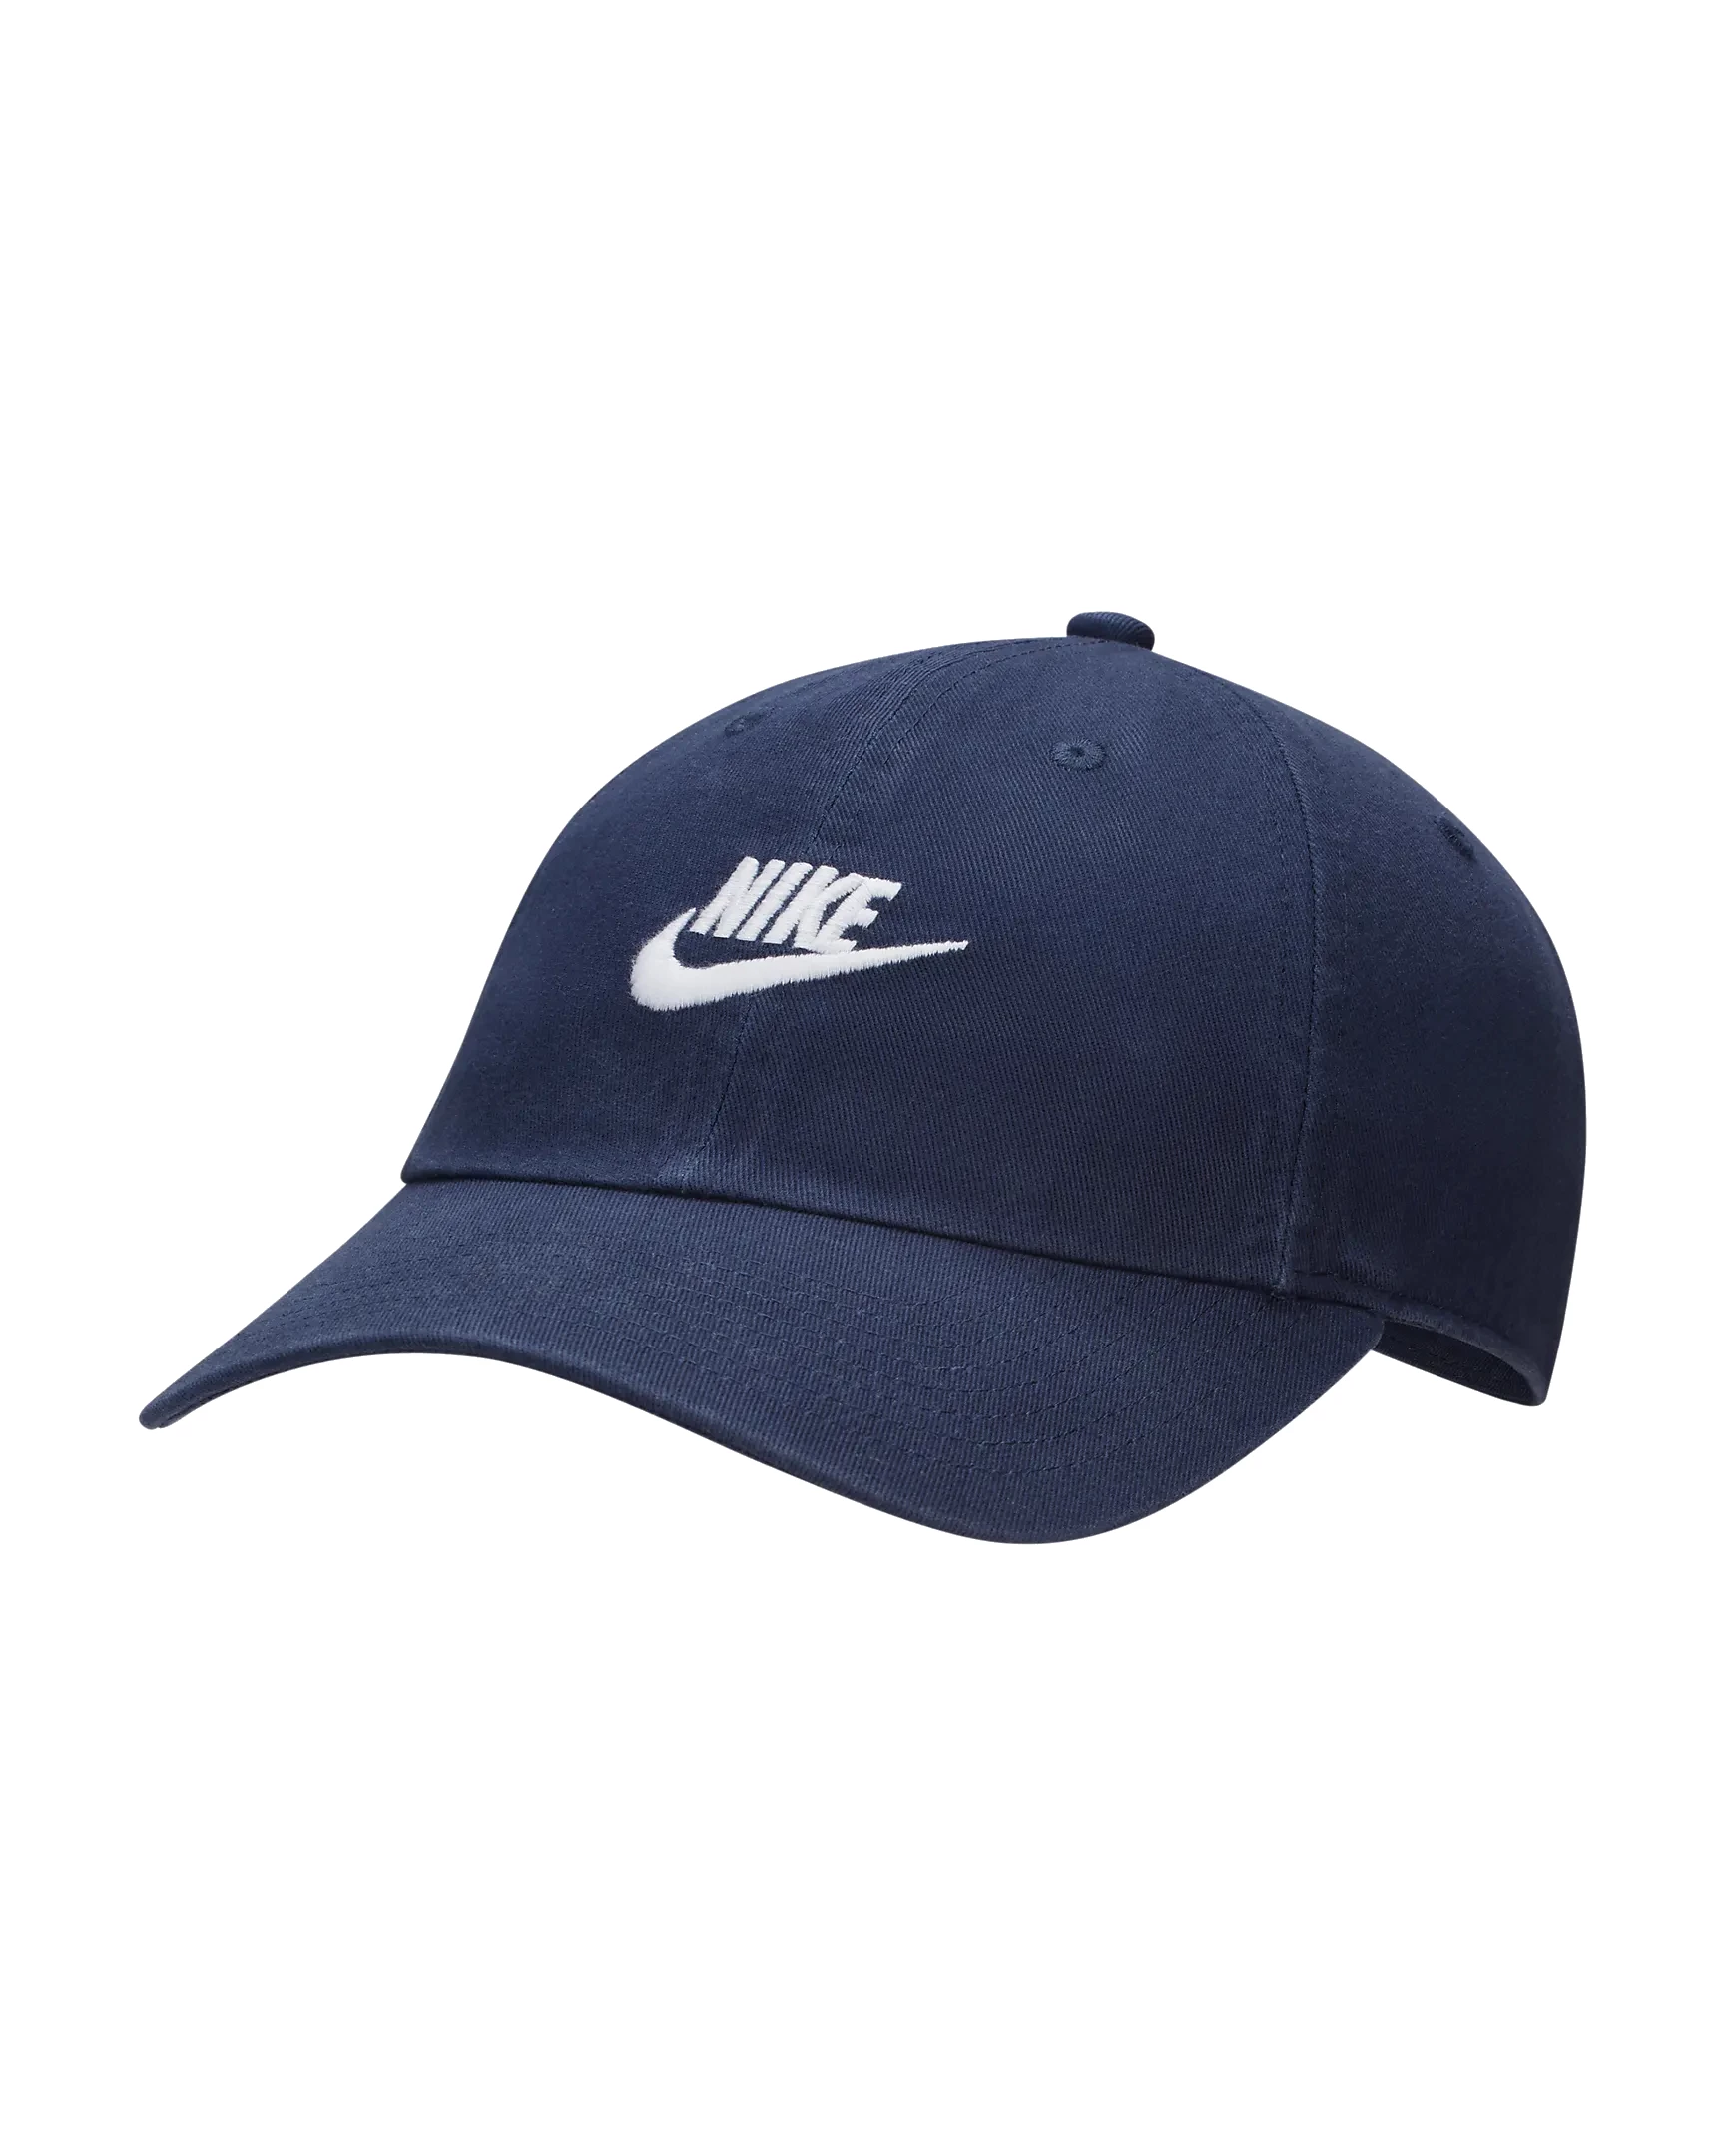 Nike Club Unstructured skate cap